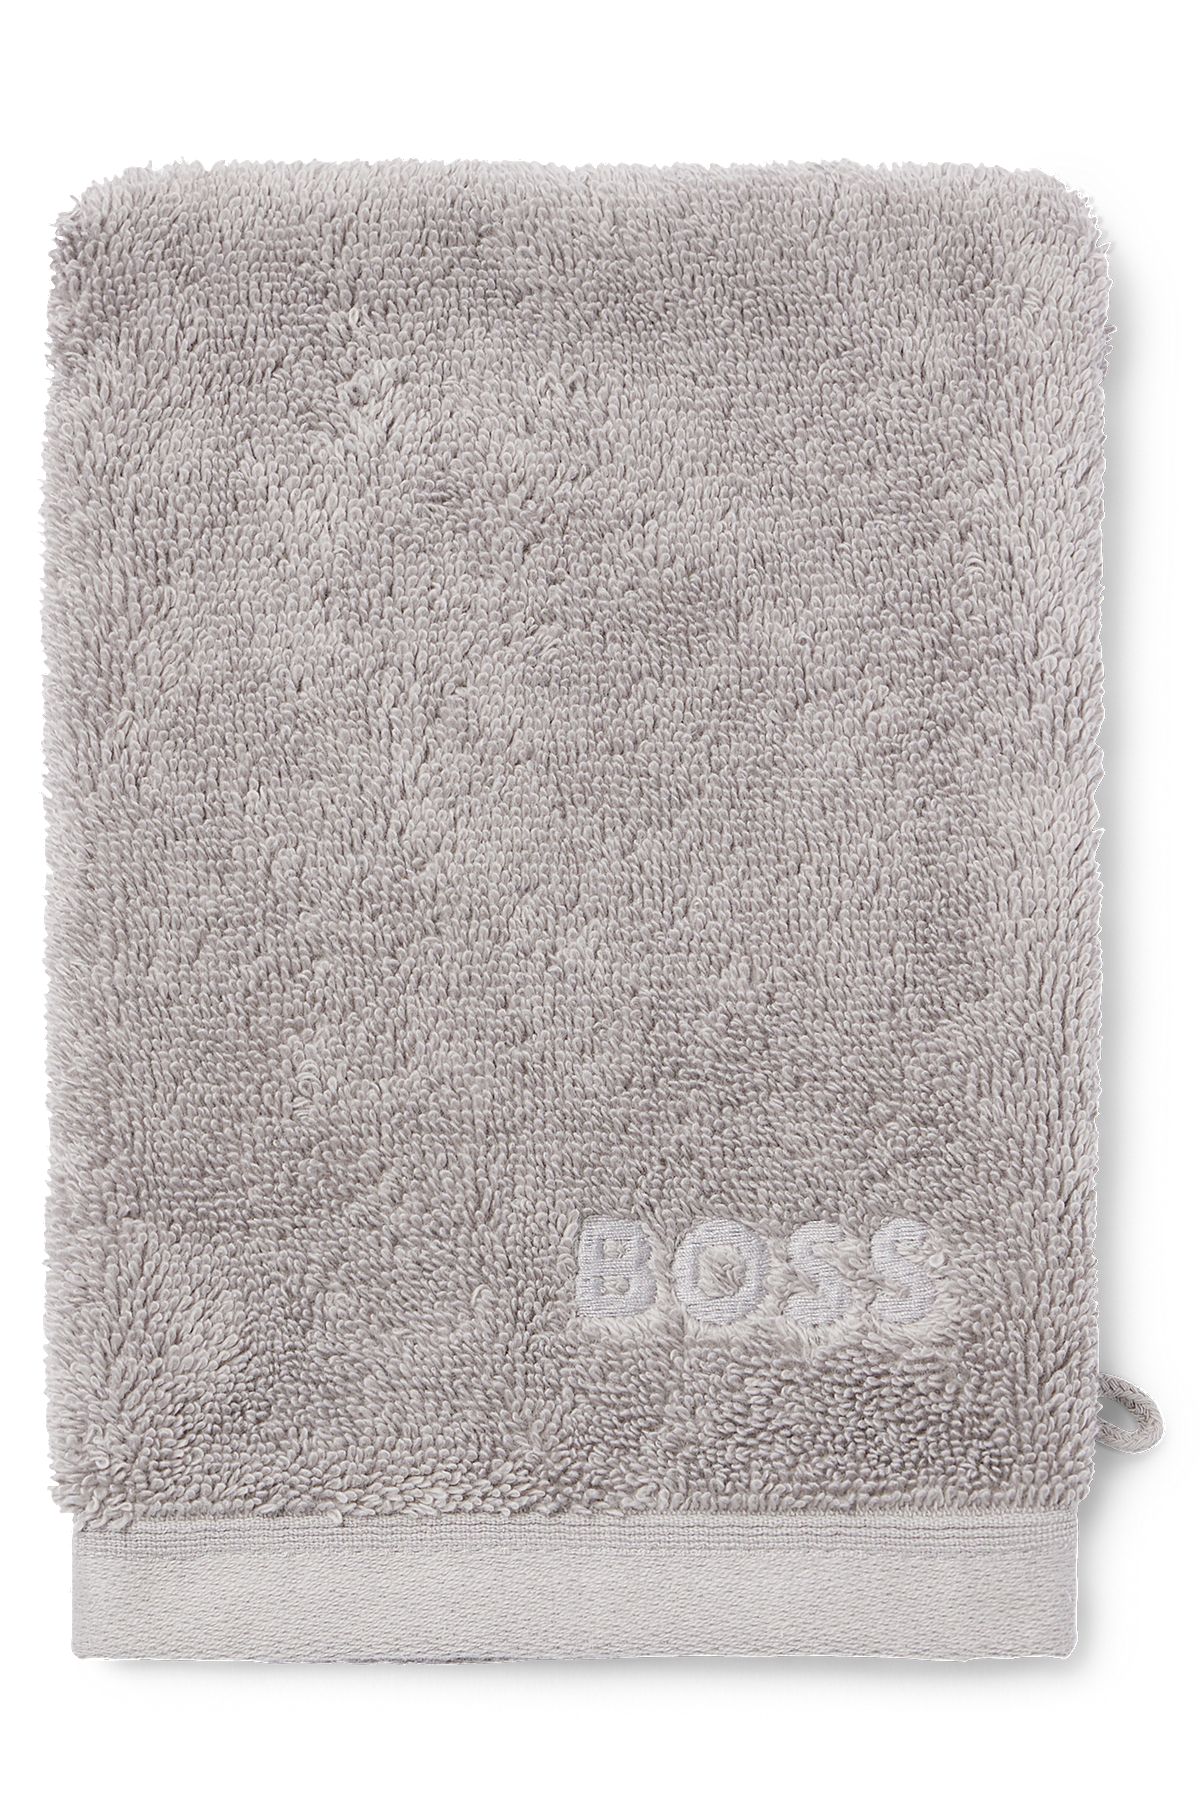 Silberfarbener Waschhandschuh aus ägäischer Baumwolle mit tonalem Logo, Silber